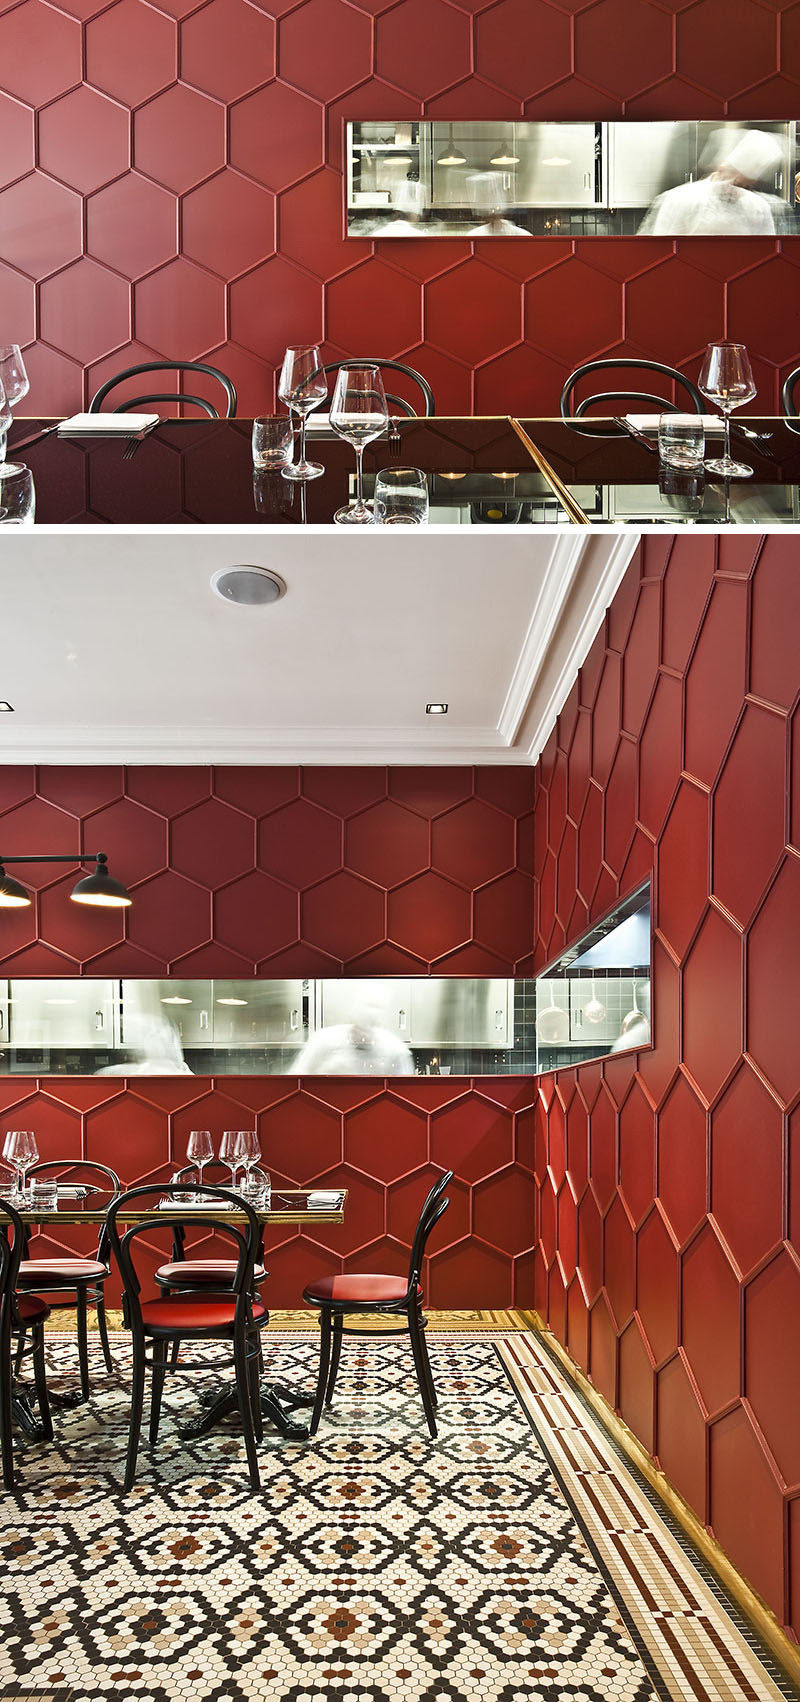 19 идей использования шестиугольников в дизайне интерьера и архитектуре // Карине Левкович, дизайнер этого миланского ресторана, использовала деревянную лепнину для создания трехмерного сотового рисунка на стенах.